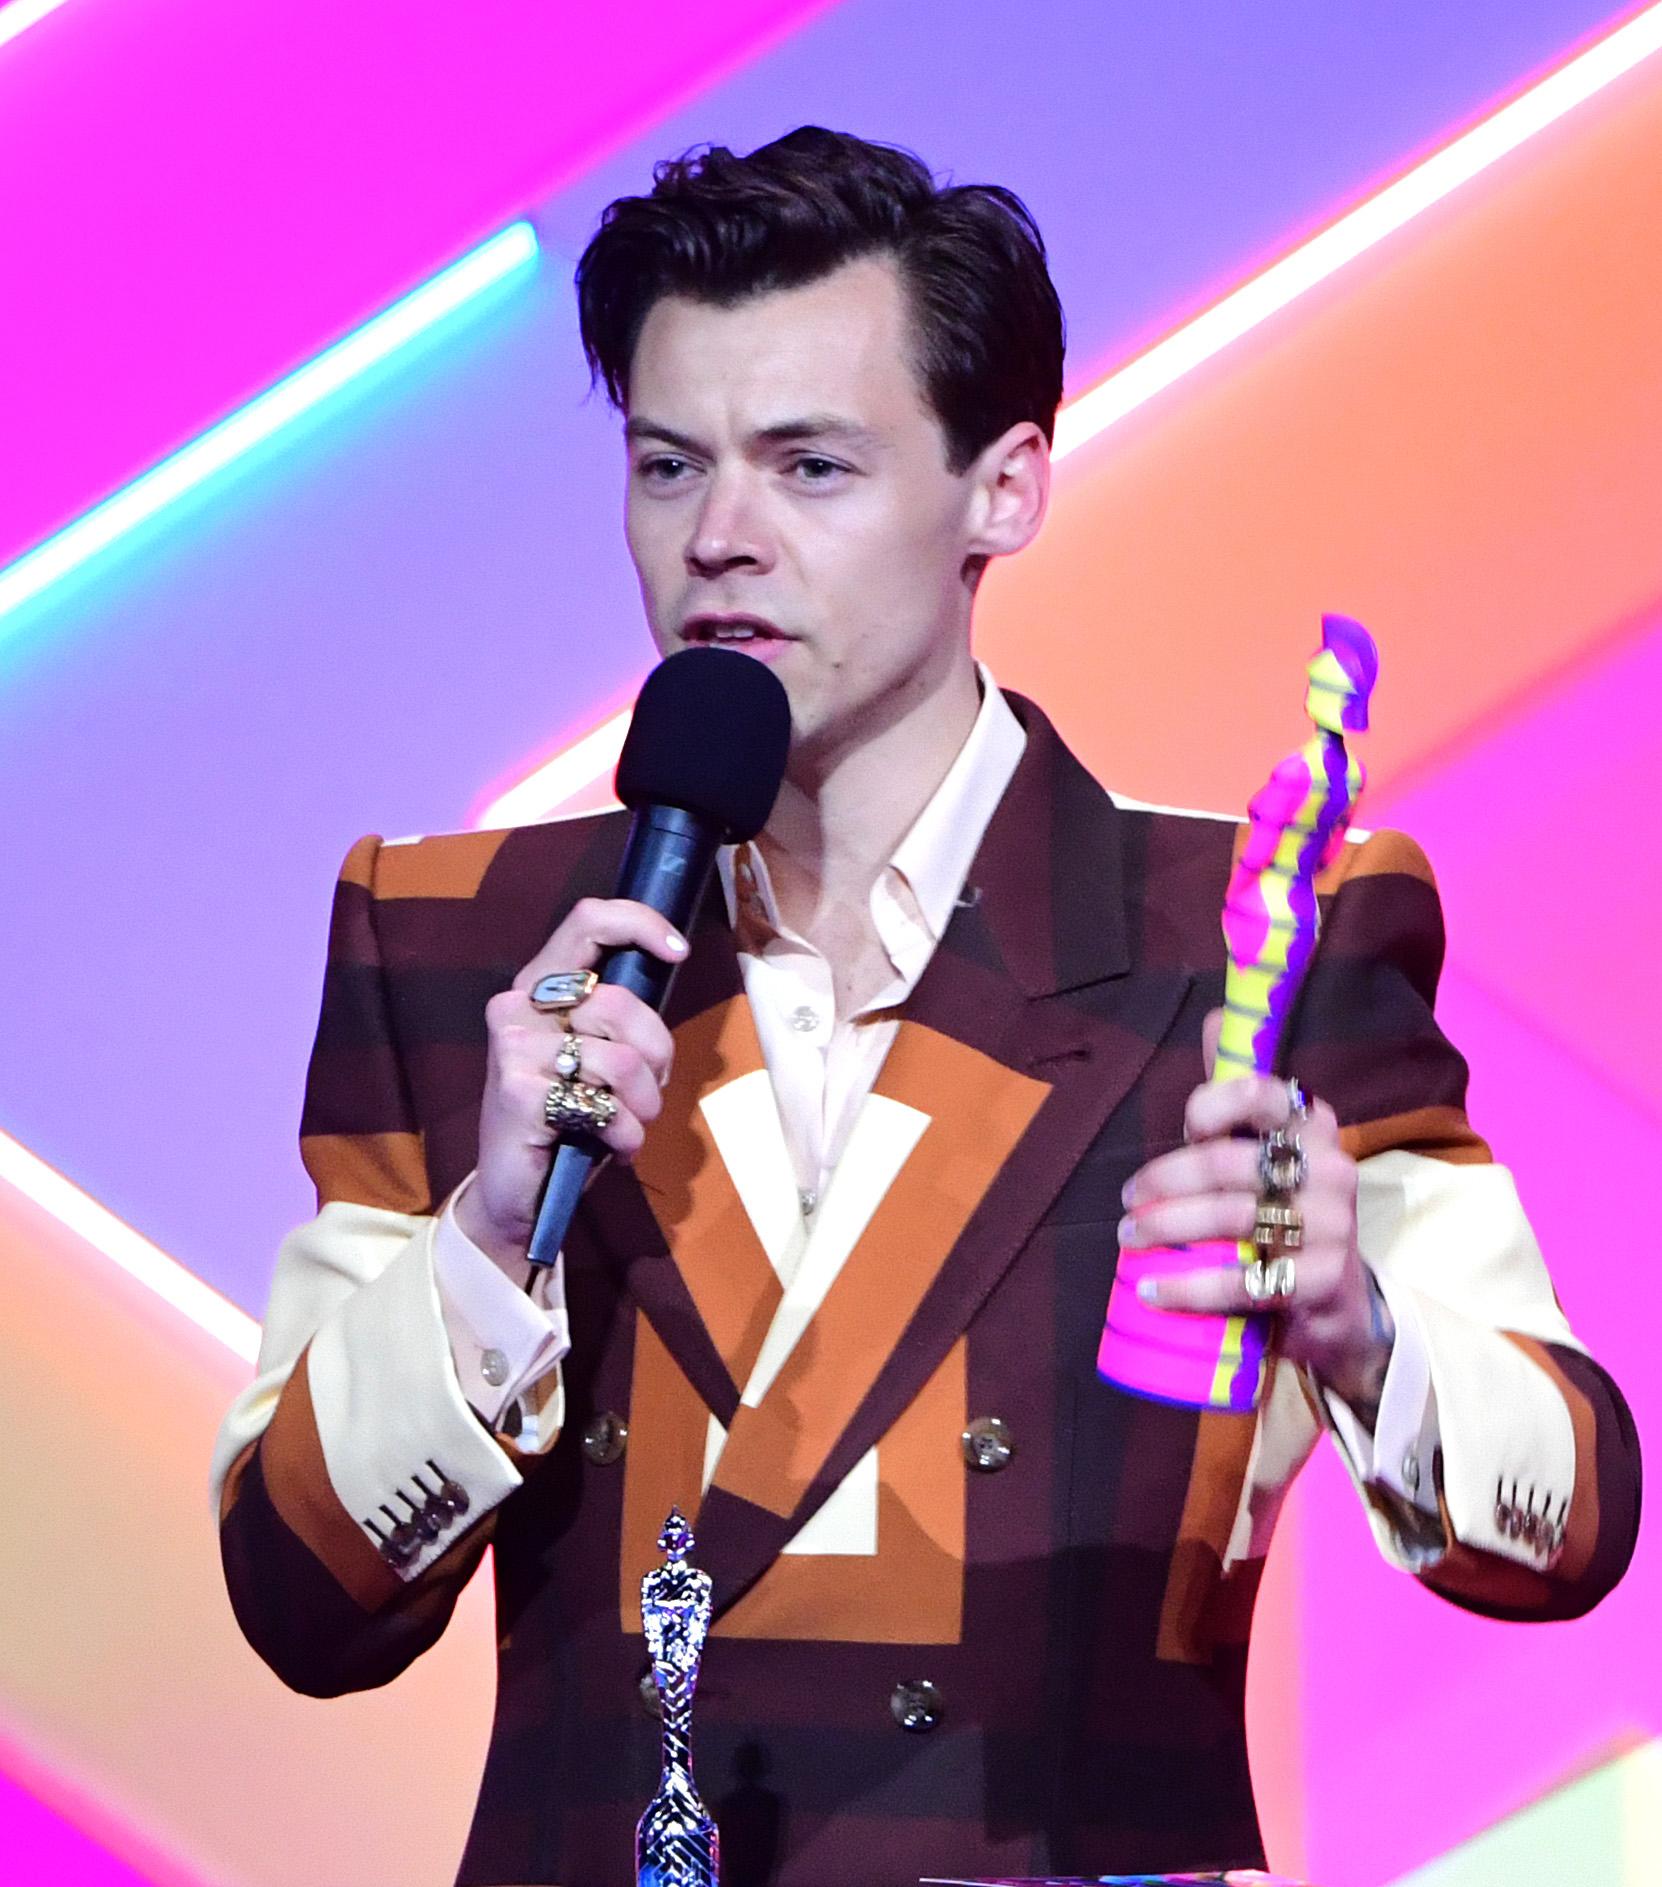 PRISVINNER: Styles mottar prisen for beste singel under Brit Awards i 2021. Legg merke til det kule mønsteret på dressen hans, samt ringene som topper hele looken.